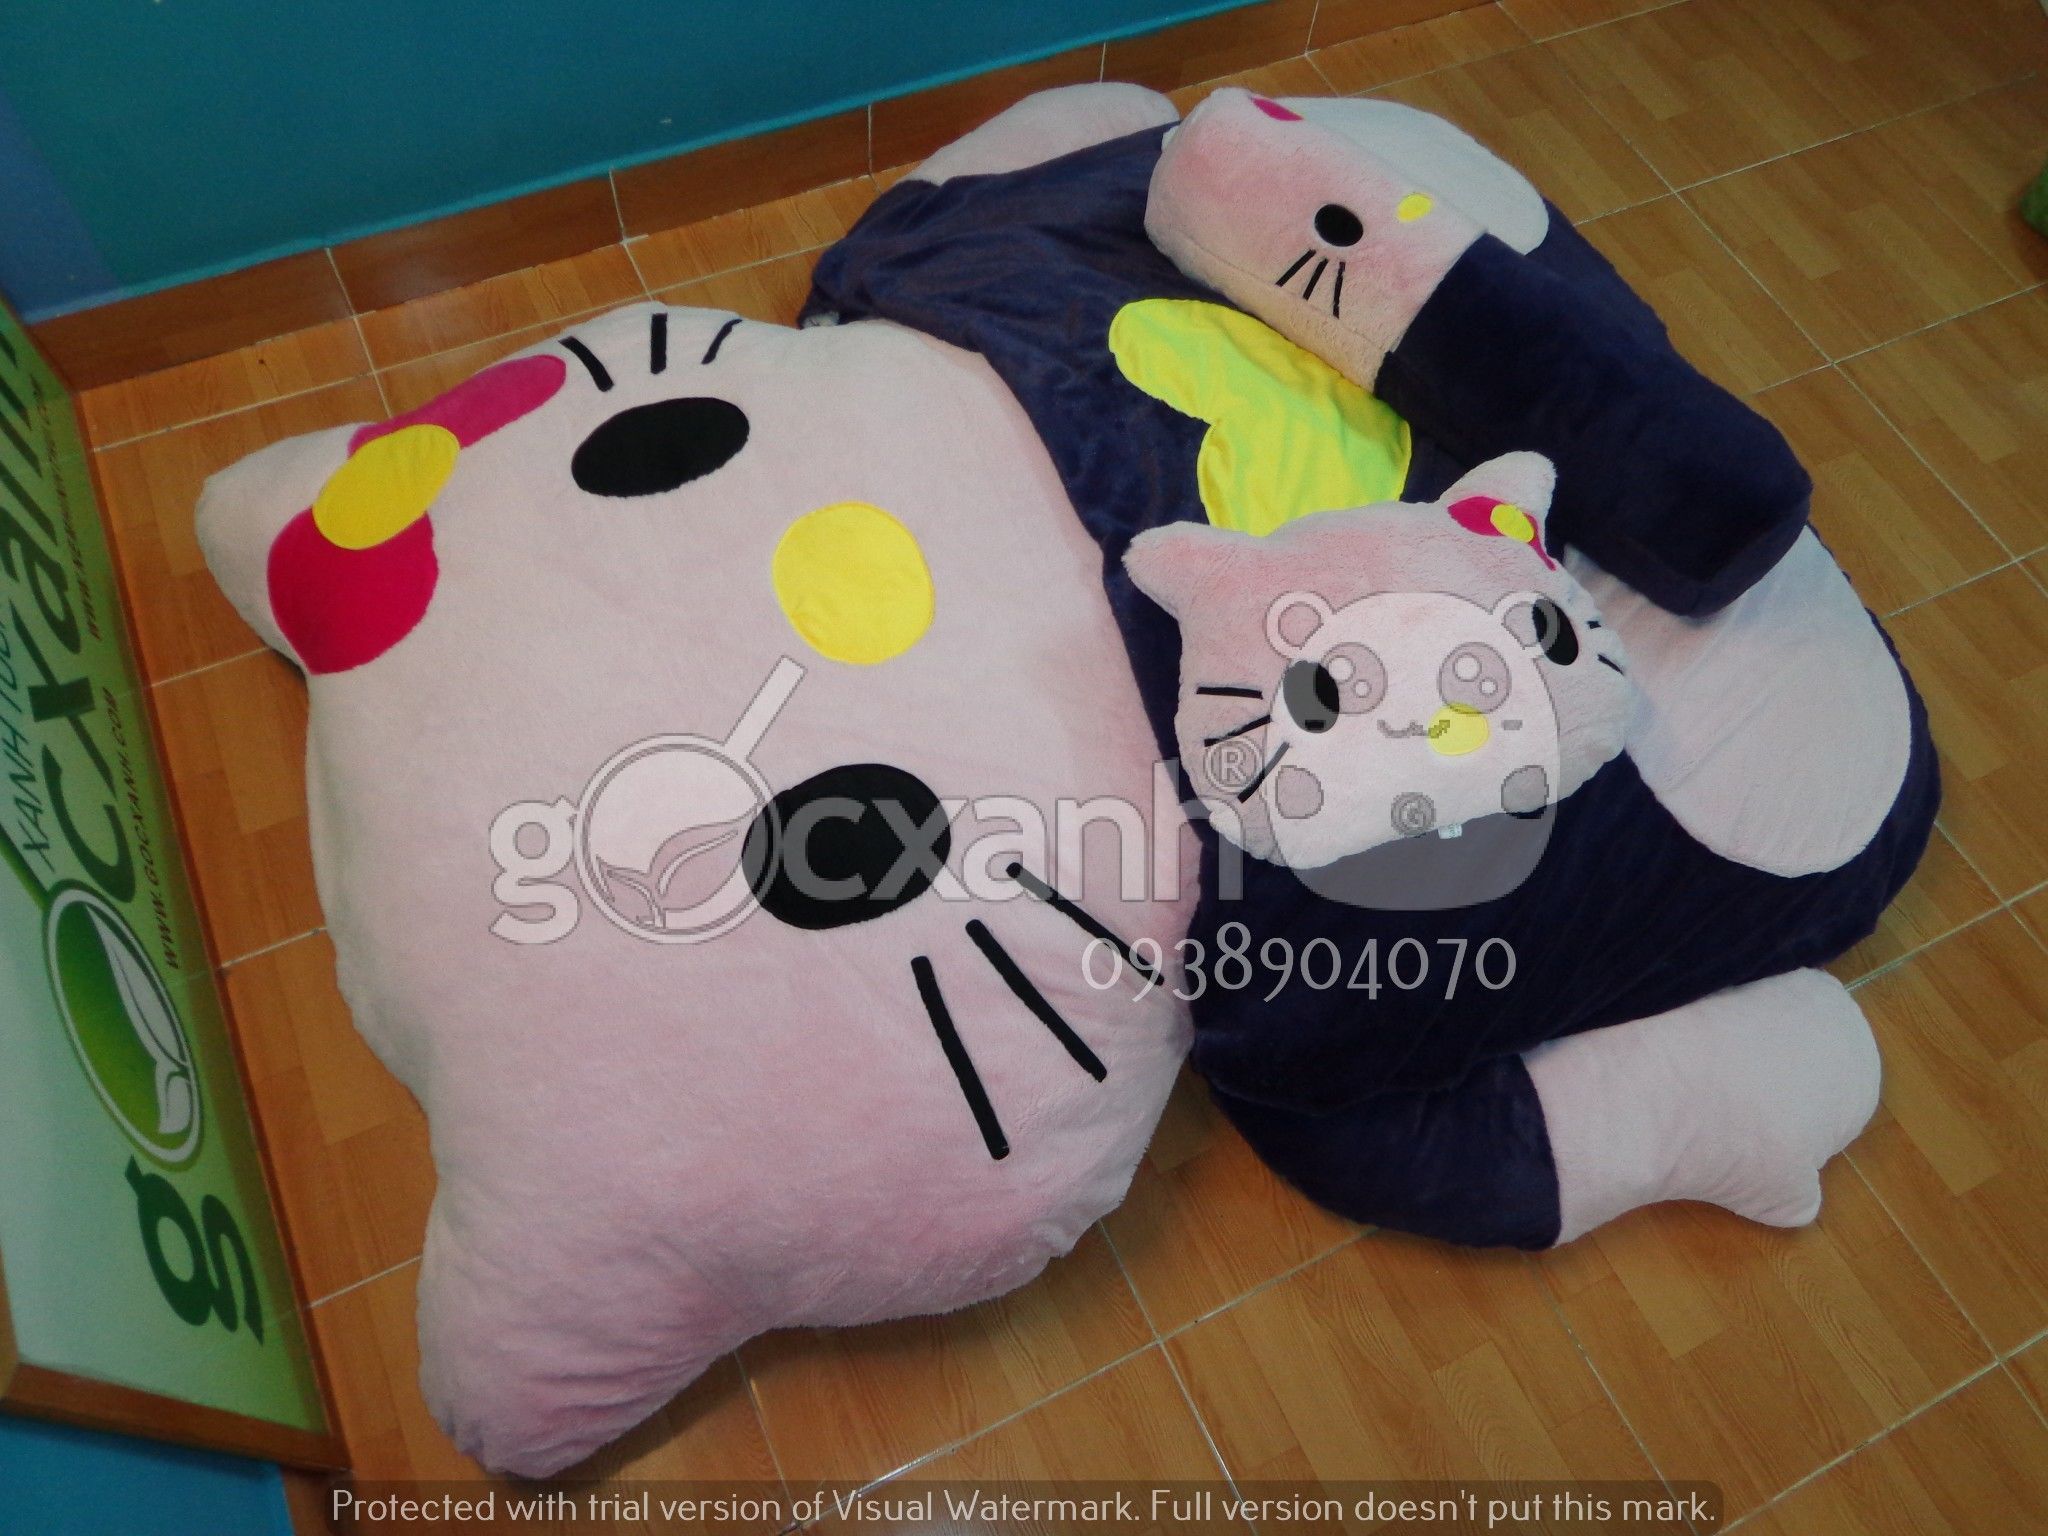 Nệm Hello Kitty màu tím than - hồng (1.6 x 2.1m)